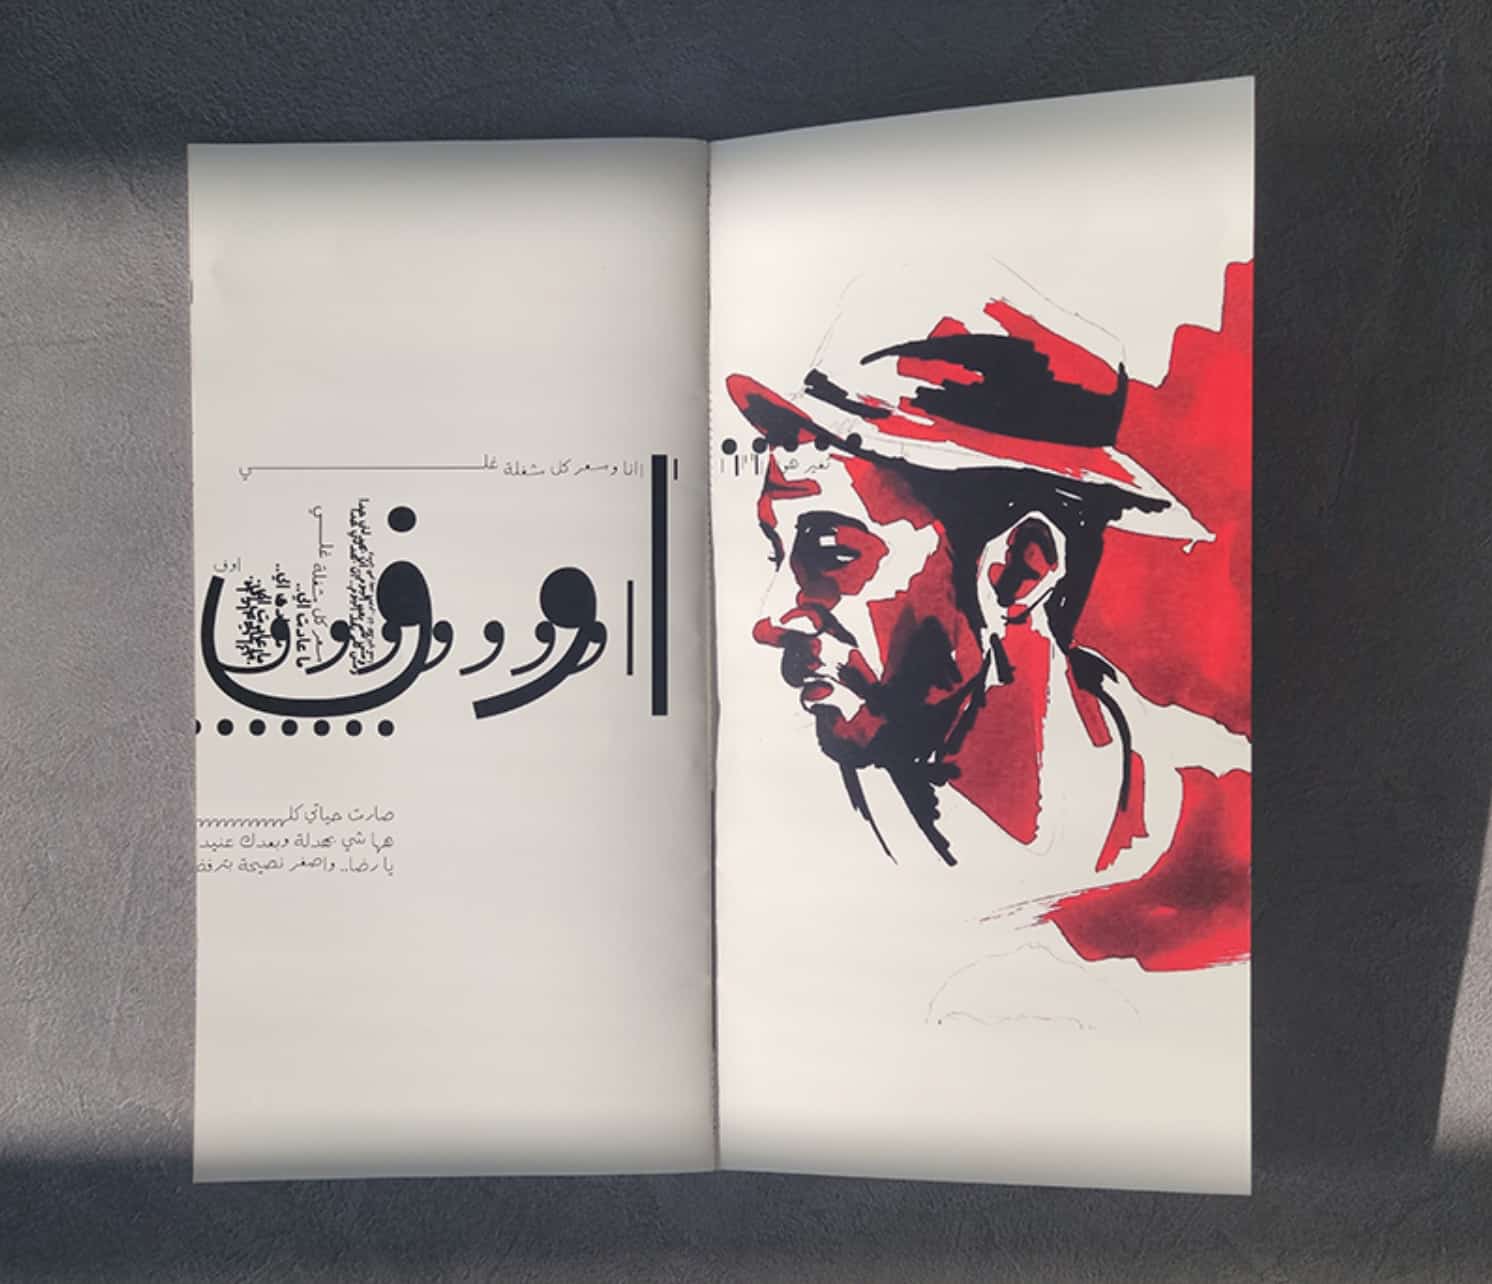 Doppelseite aus einem Heft. Auf der linken Seite ist arabische Schrift zu sehen, auf der rechten Seite eine Porträtzeichnung eines Mannes in roter und schwarzer Tusche